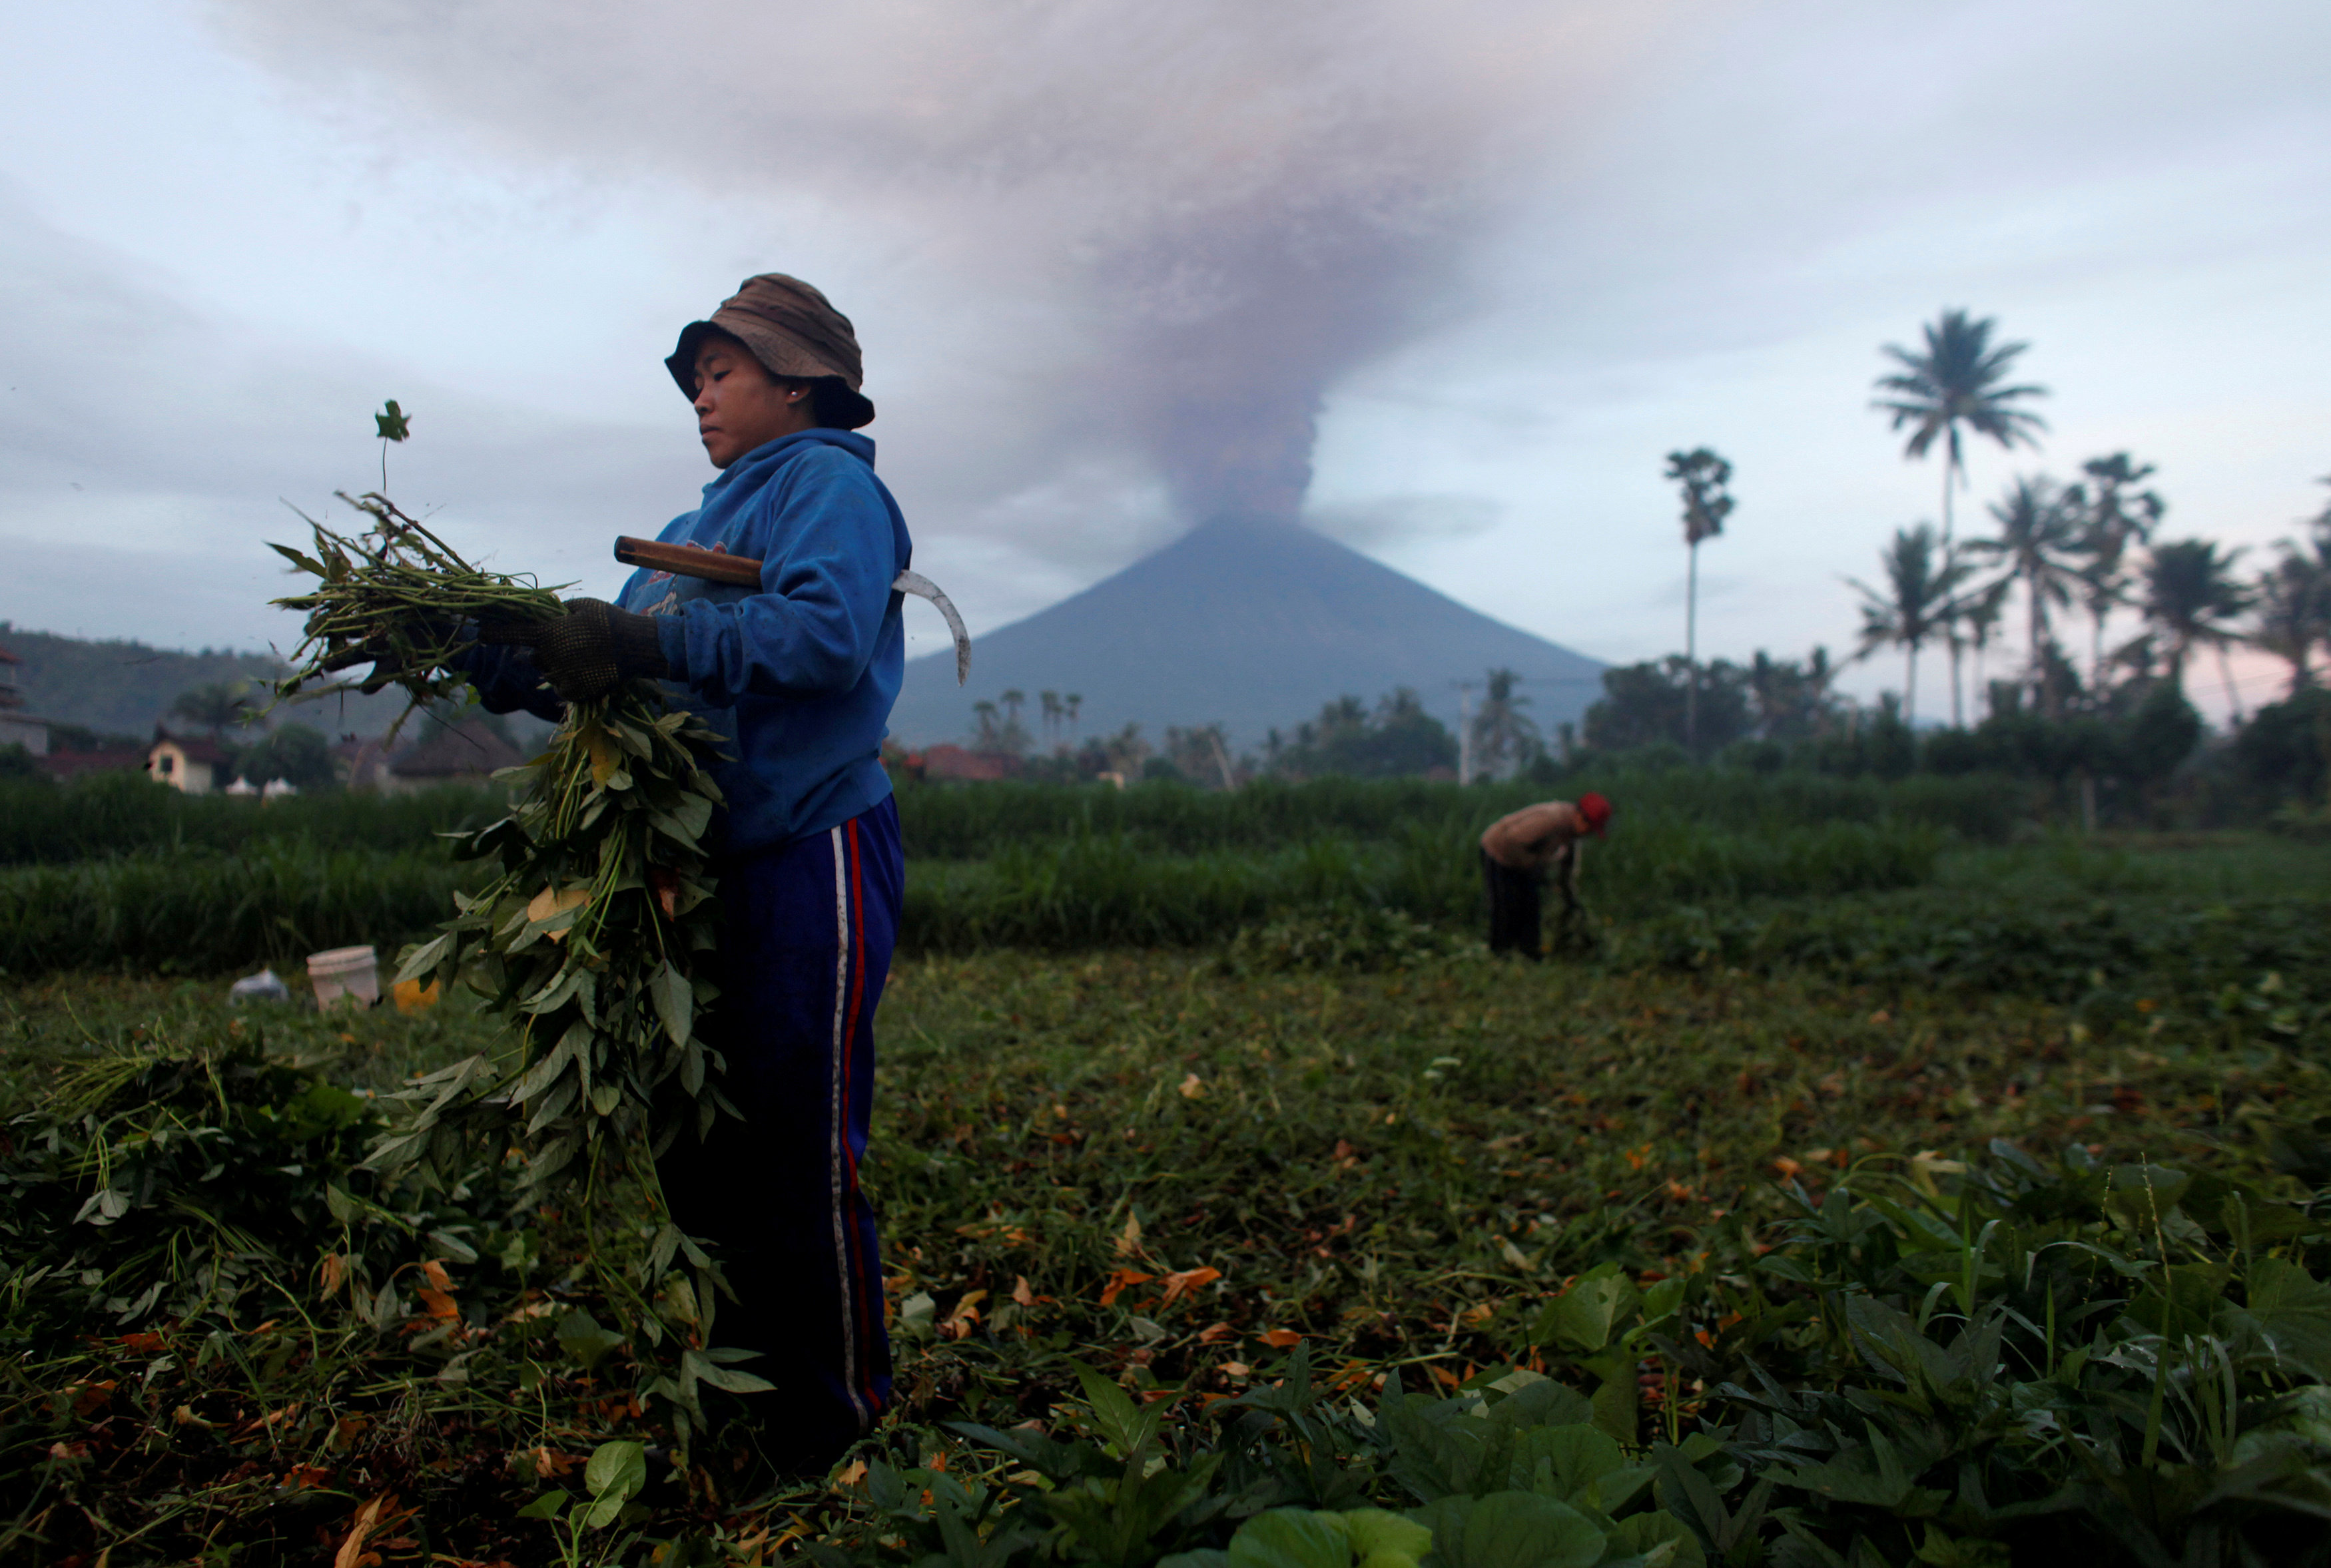 Πάνω από 100.000 εγκαταλείπουν το Μπαλί λόγω ηφαιστείου